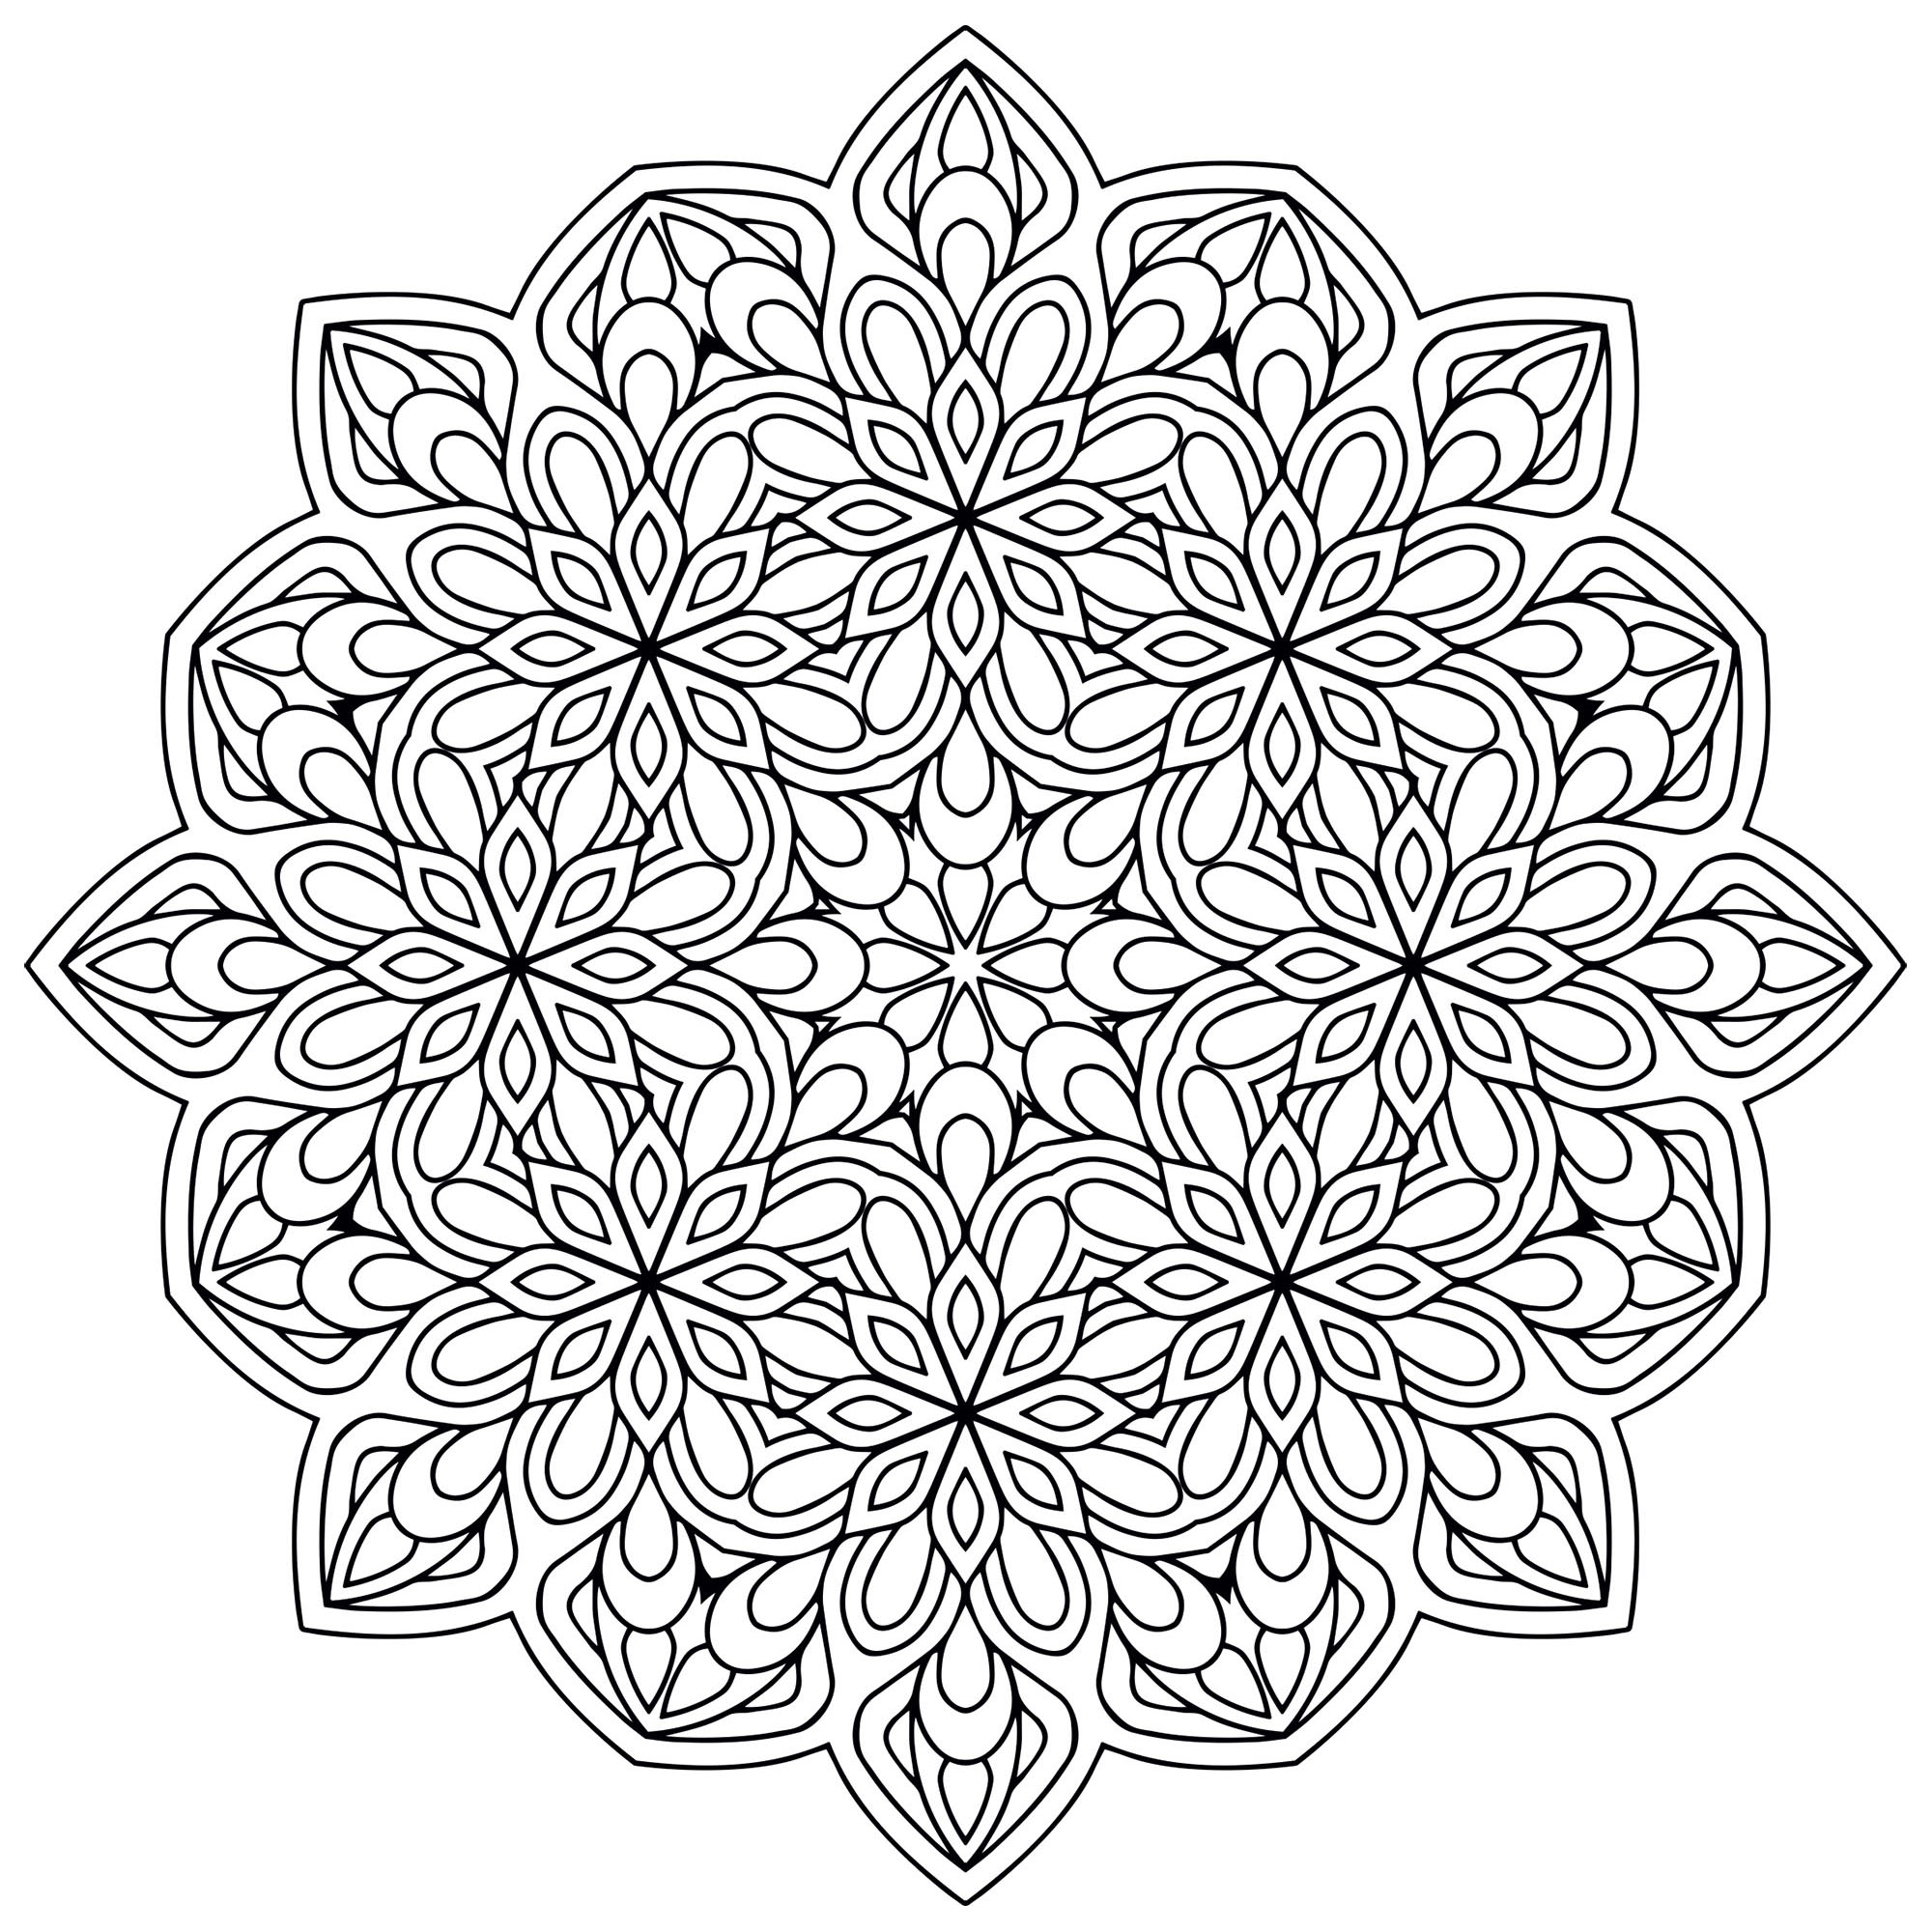 Un Mandala de difficulté 'normale', très symétrique, qui conviendra aux enfants et aux adultes qui souhaitent des coloriages ni trop simples ni trop difficiles.